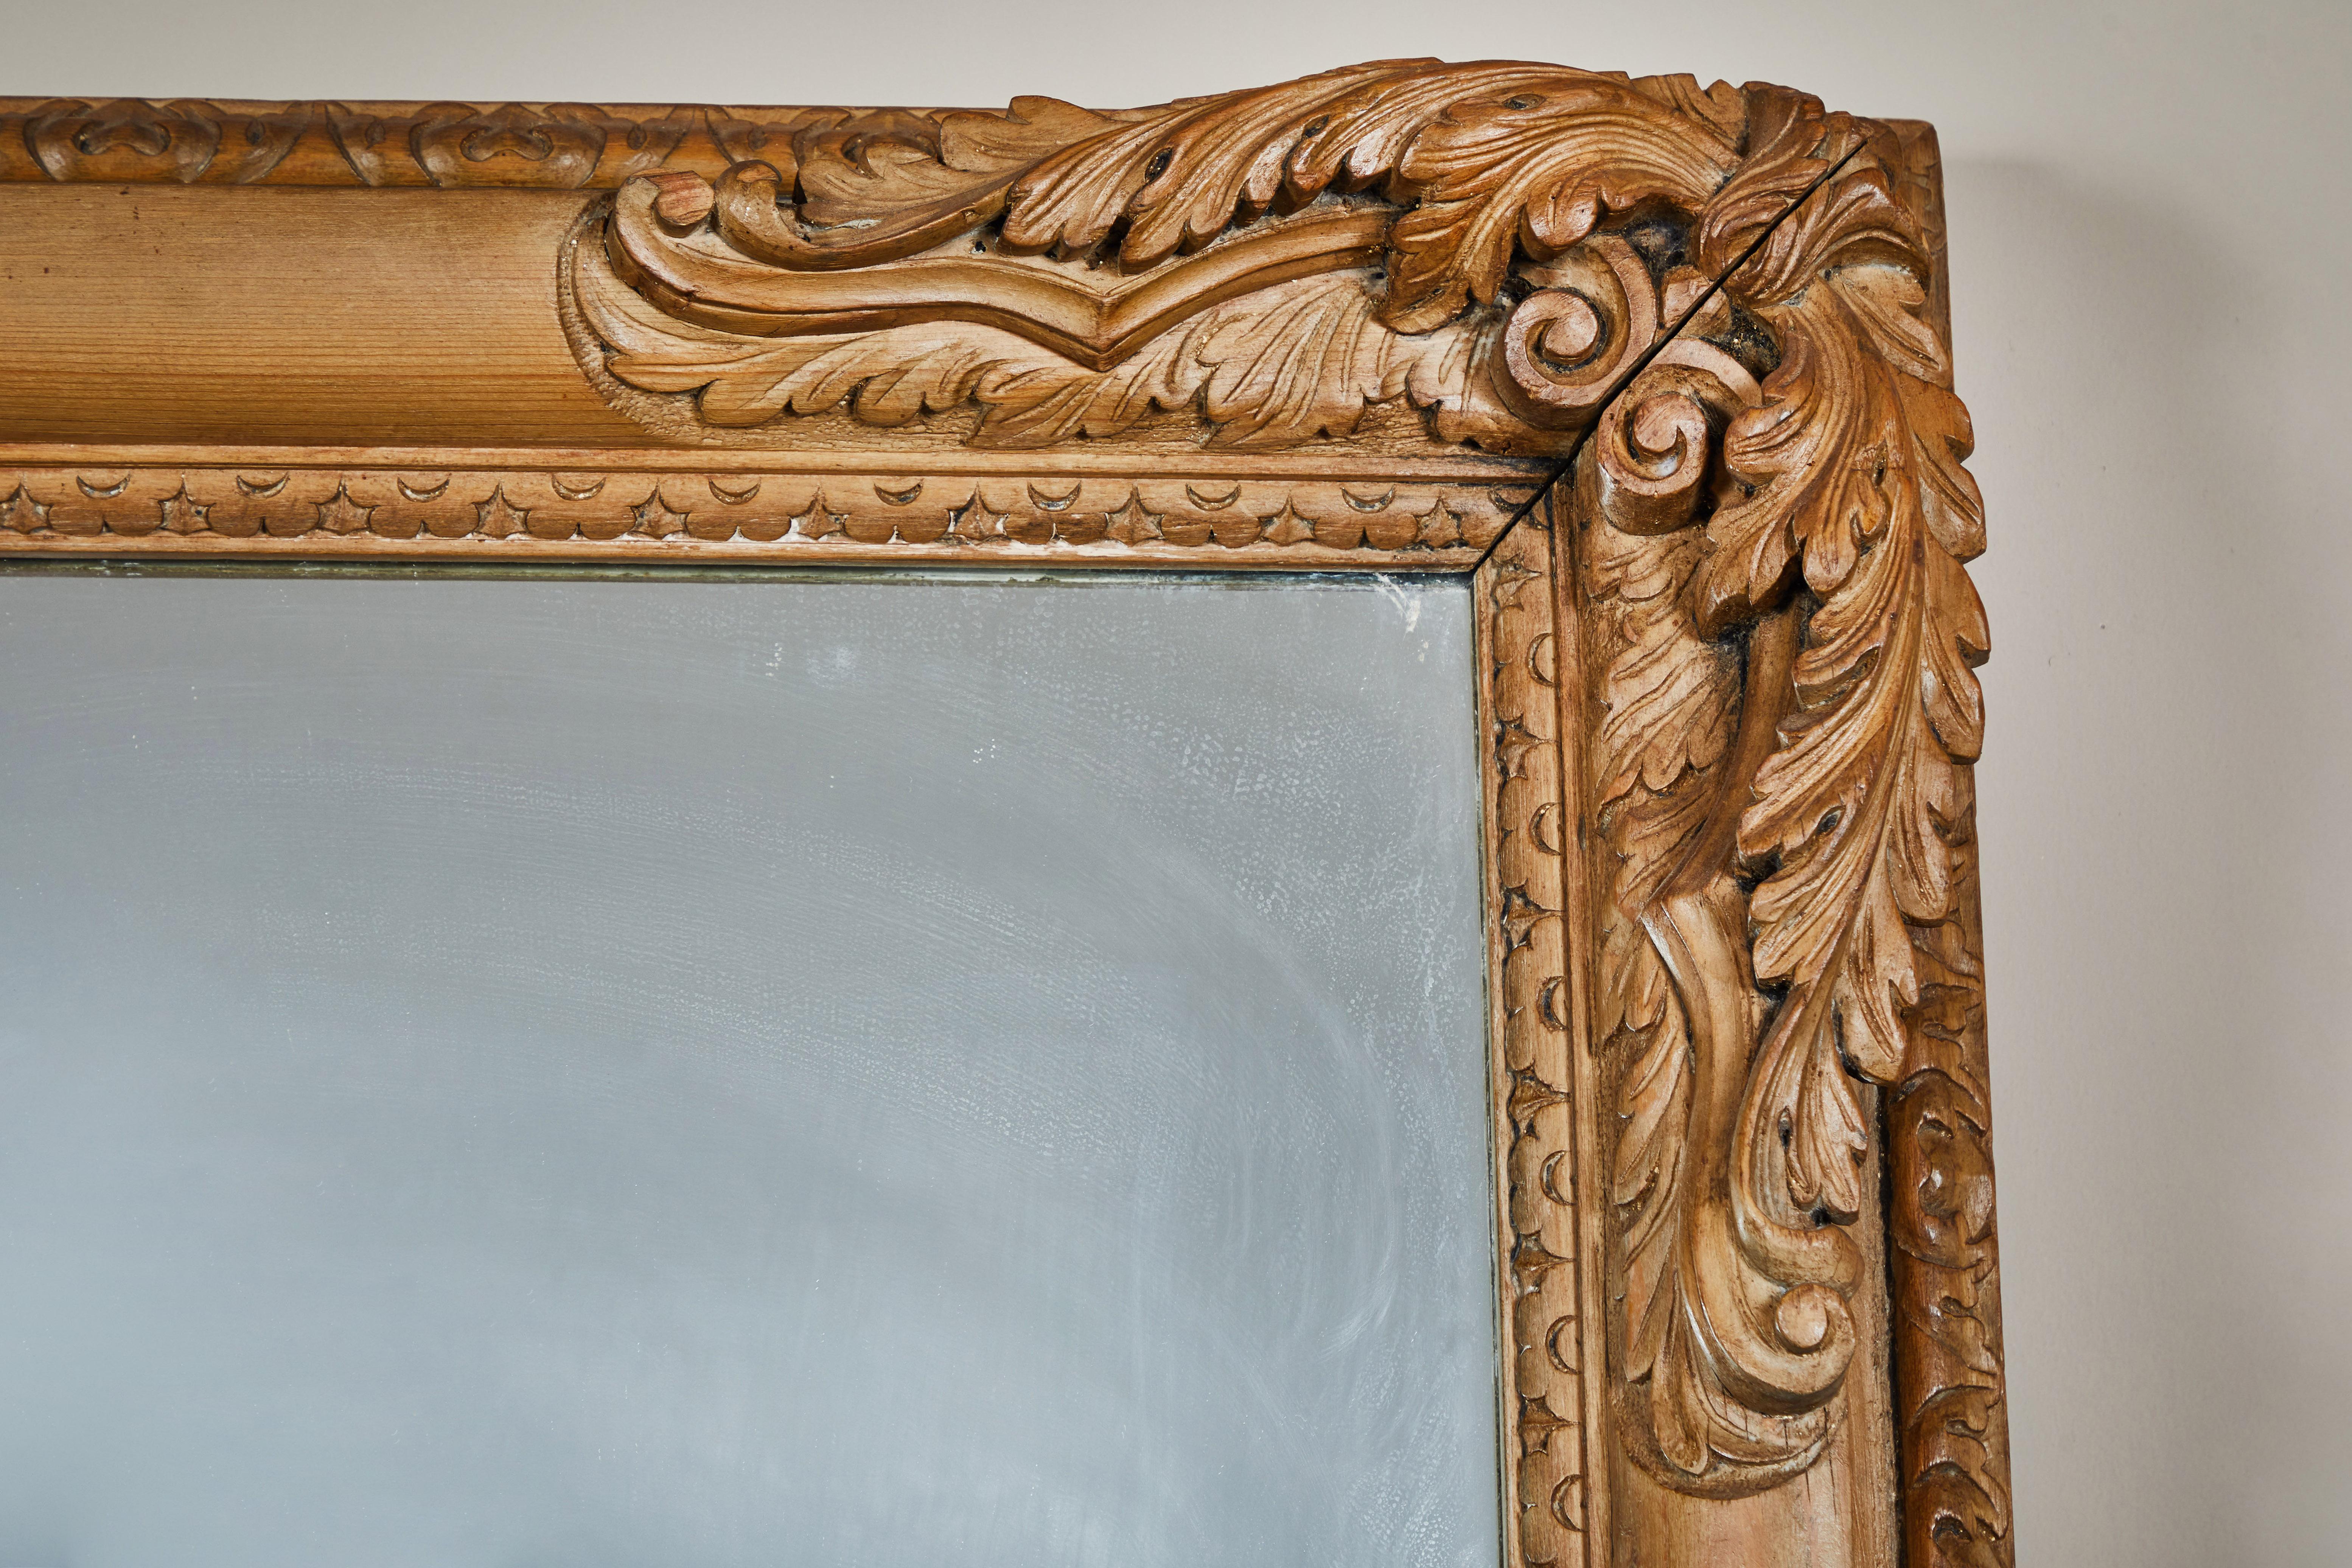 Grand miroir encadré de bois clair avec des coins fortement sculptés. Miroir de grande taille, incliné vers le sol, ou installé en position basse dans un hall d'entrée, un dressing, etc.